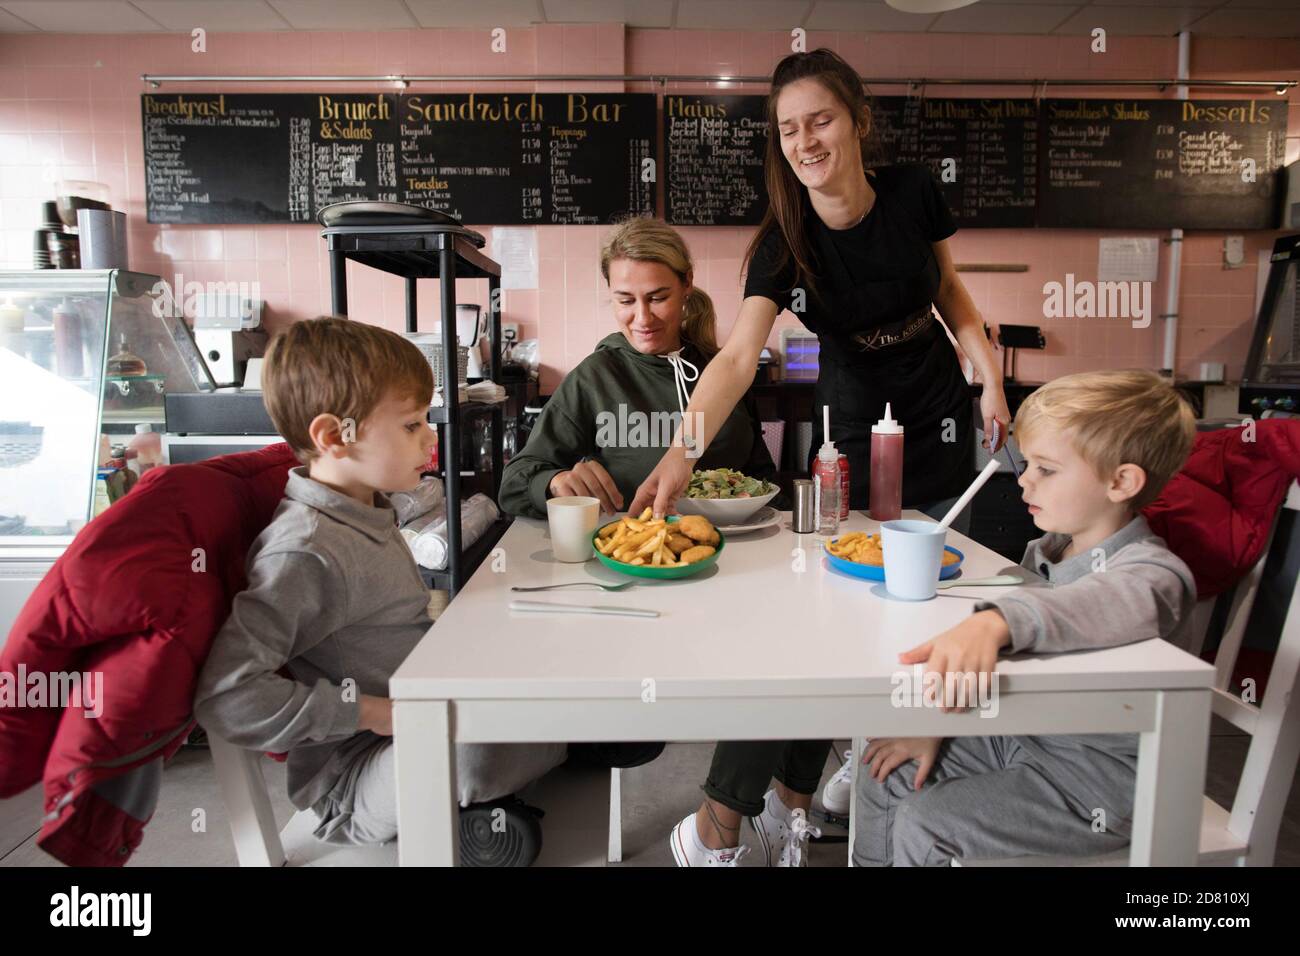 RETRANSMETTANT LES NOMS LEIGH Anderson, avec ses fils Charlie Brown (à gauche) et Albie Brown, mangent un repas au café Kitchen à Bermondsey, Londres, fournissent des repas scolaires gratuits pour les enfants pendant les vacances de la moitié du séjour. Les conseils et les entreprises locaux continuent de promettre la gratuité de la nourriture pour les enfants dans le besoin pendant la pause de mi-mandat de cette semaine après que le gouvernement a rejeté une motion des travaillistes visant à prolonger l'offre gratuite de repas scolaires en Angleterre pendant les fêtes. Banque D'Images